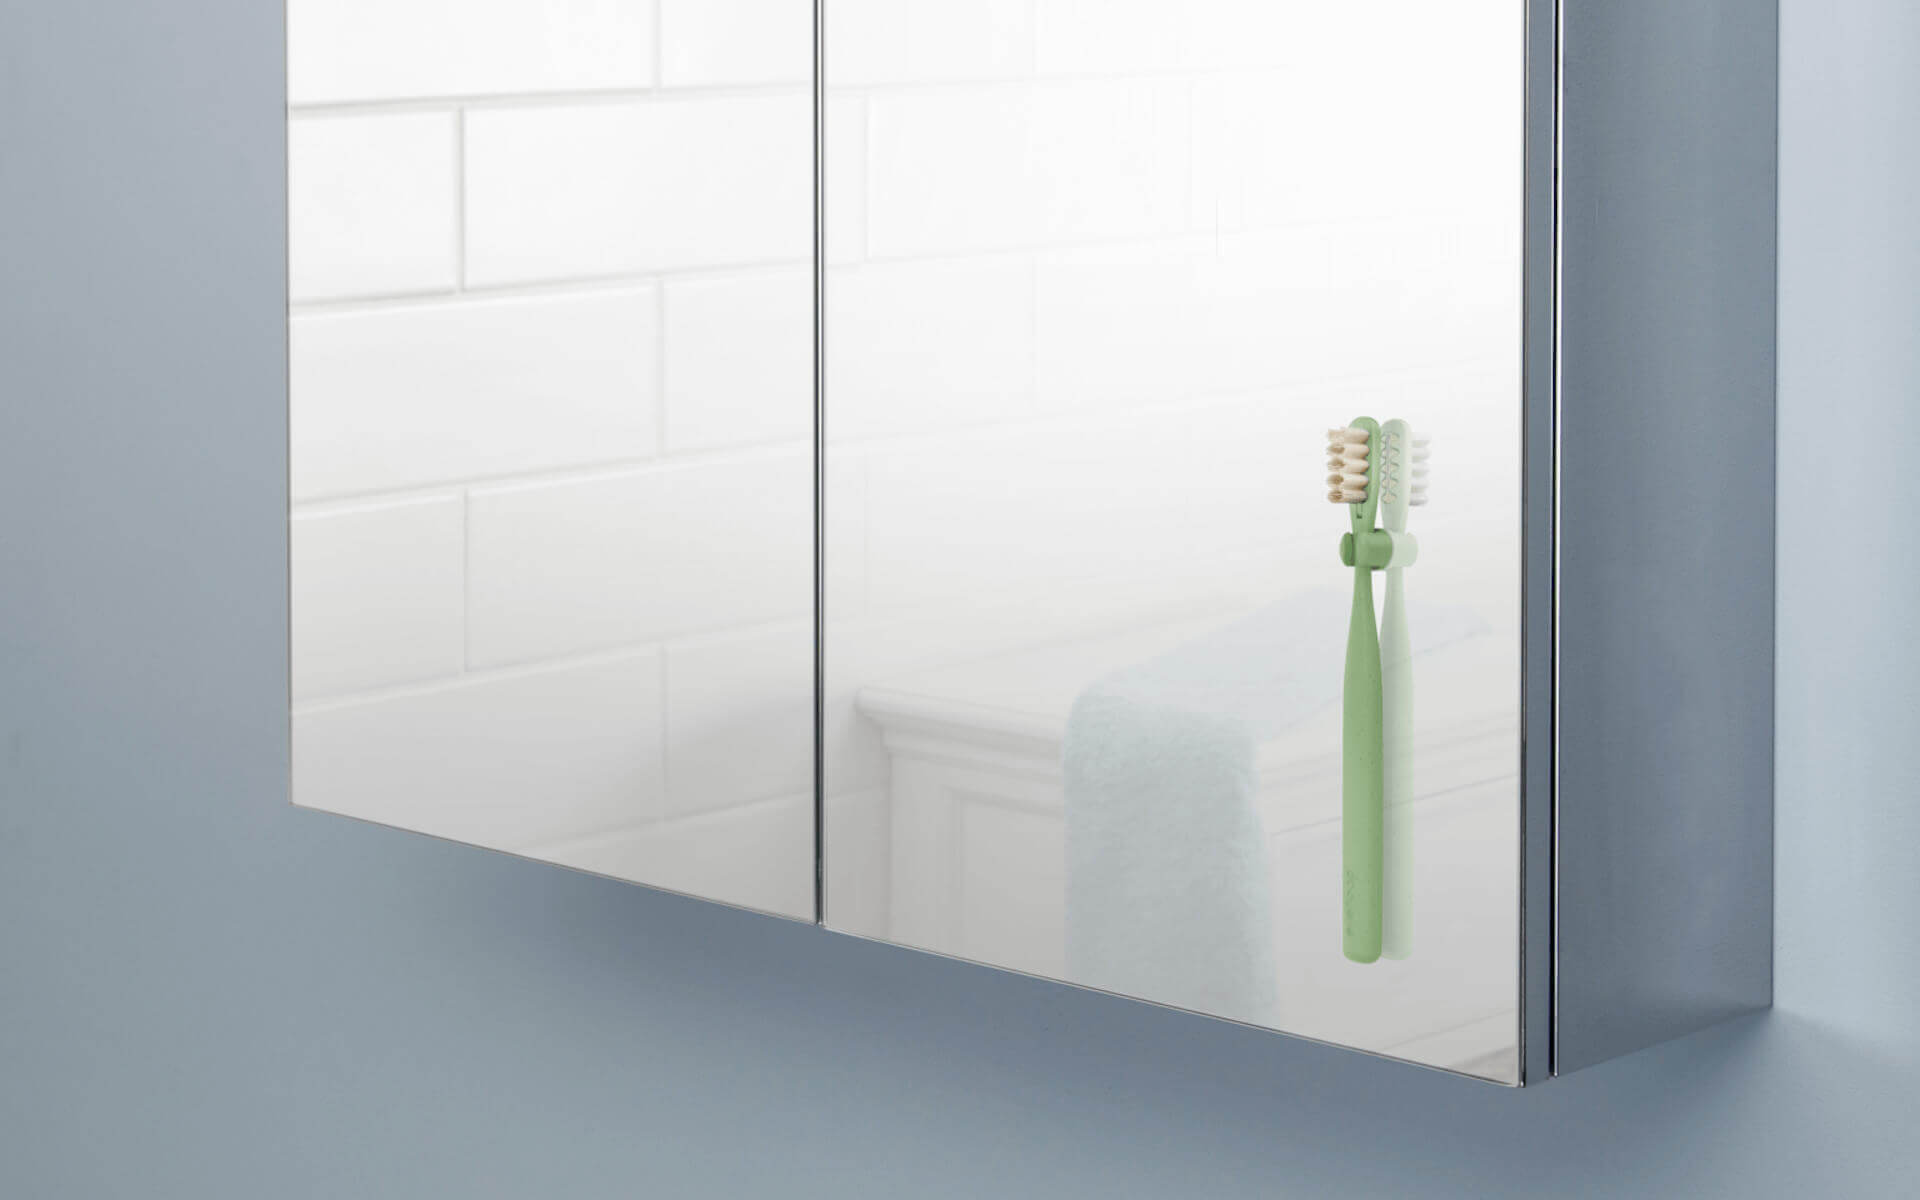 Everloop Toothbrush - in the mirror